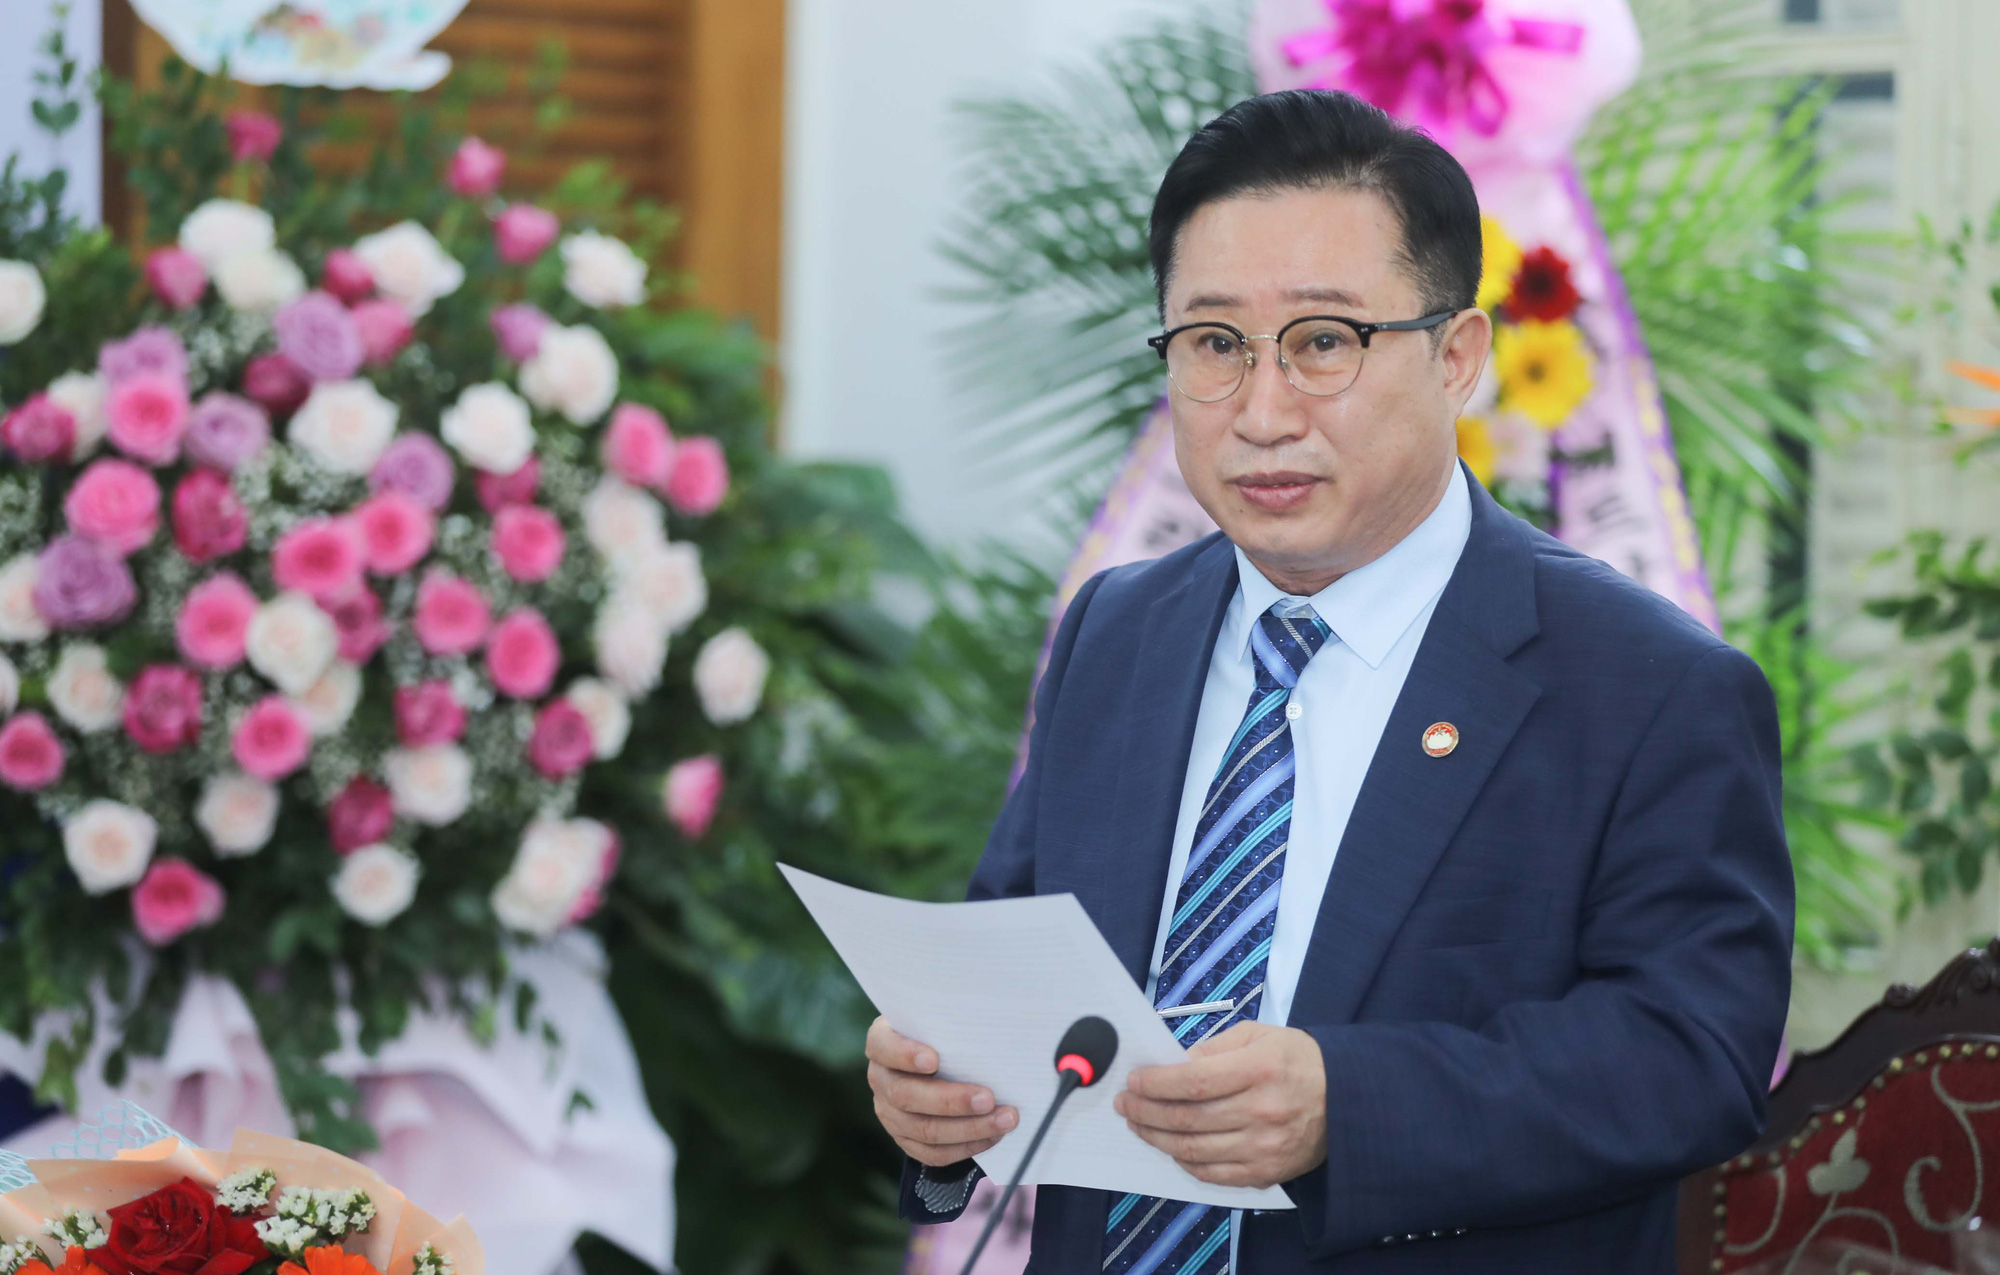 Tiếp tục bổ nhiệm ông Lý Xương Căn là đại sứ du lịch tại Hàn Quốc - Ảnh 1.